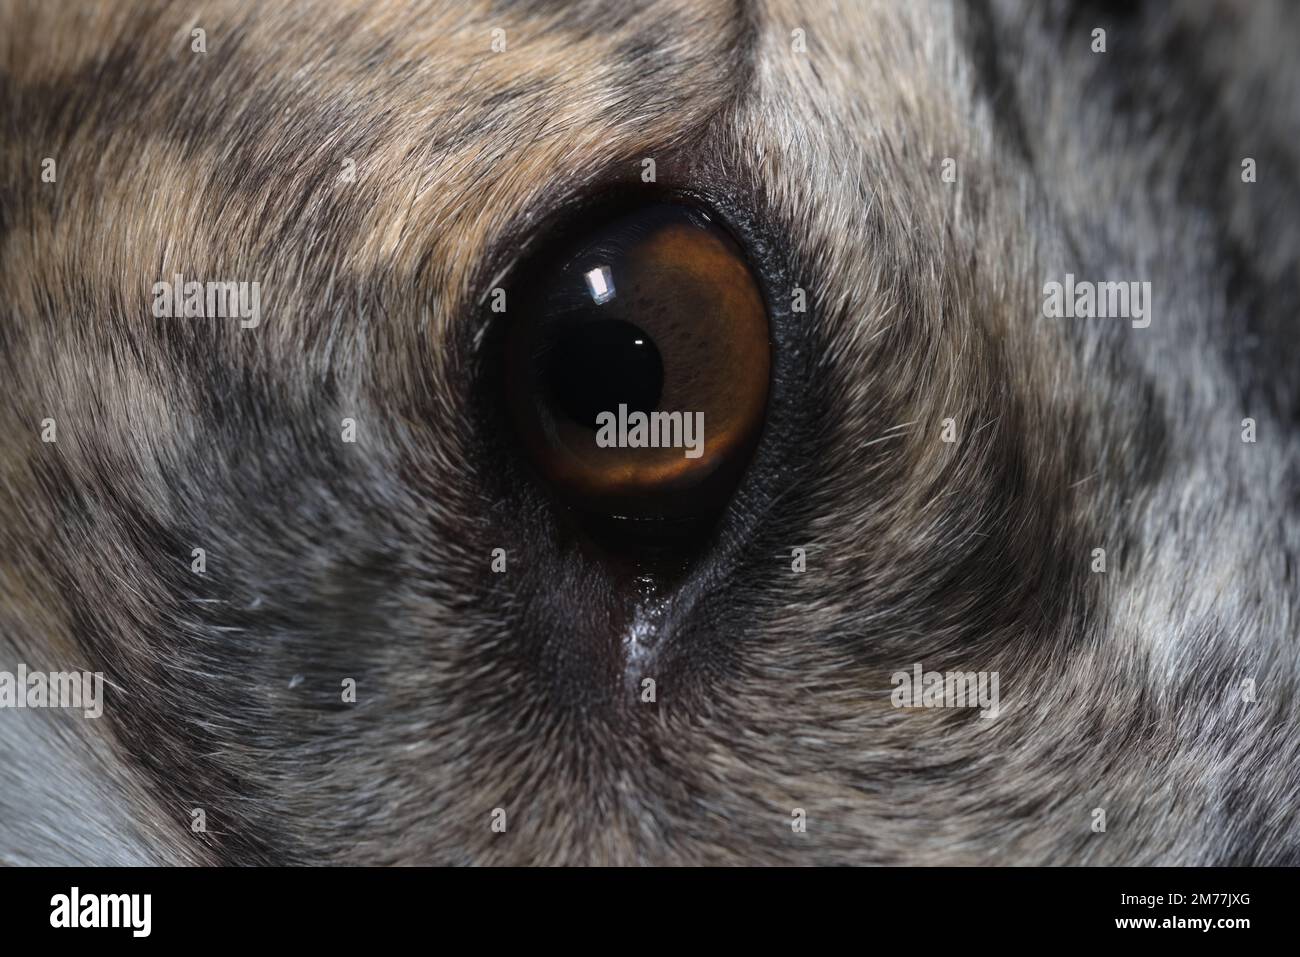 Gros plan extrême sur l'iris brun de l'œil de lévrier de chien. Mise au point sélective, avec une texture de fourrure plein cadre, la pupille dilatée apparaît noire. Banque D'Images